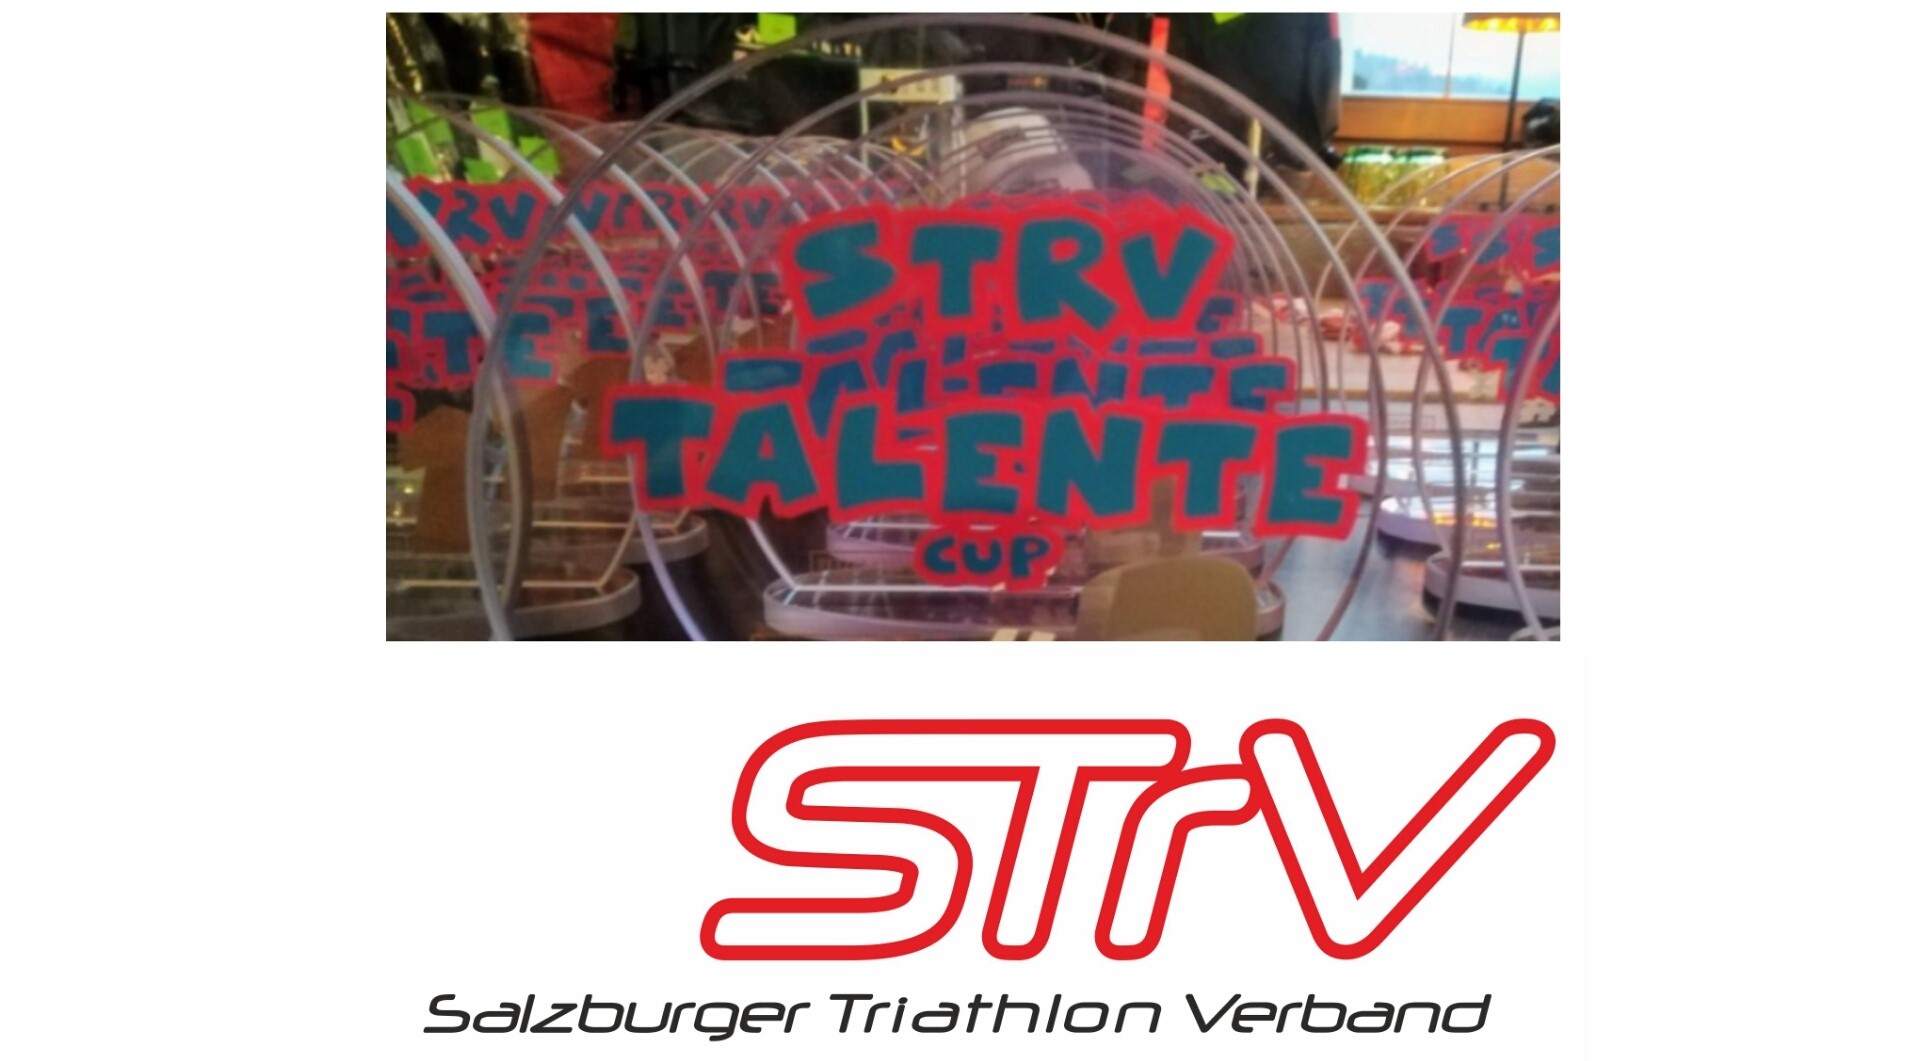 Salzburger Triathlon Talente Cup - STTC: Los gehts!